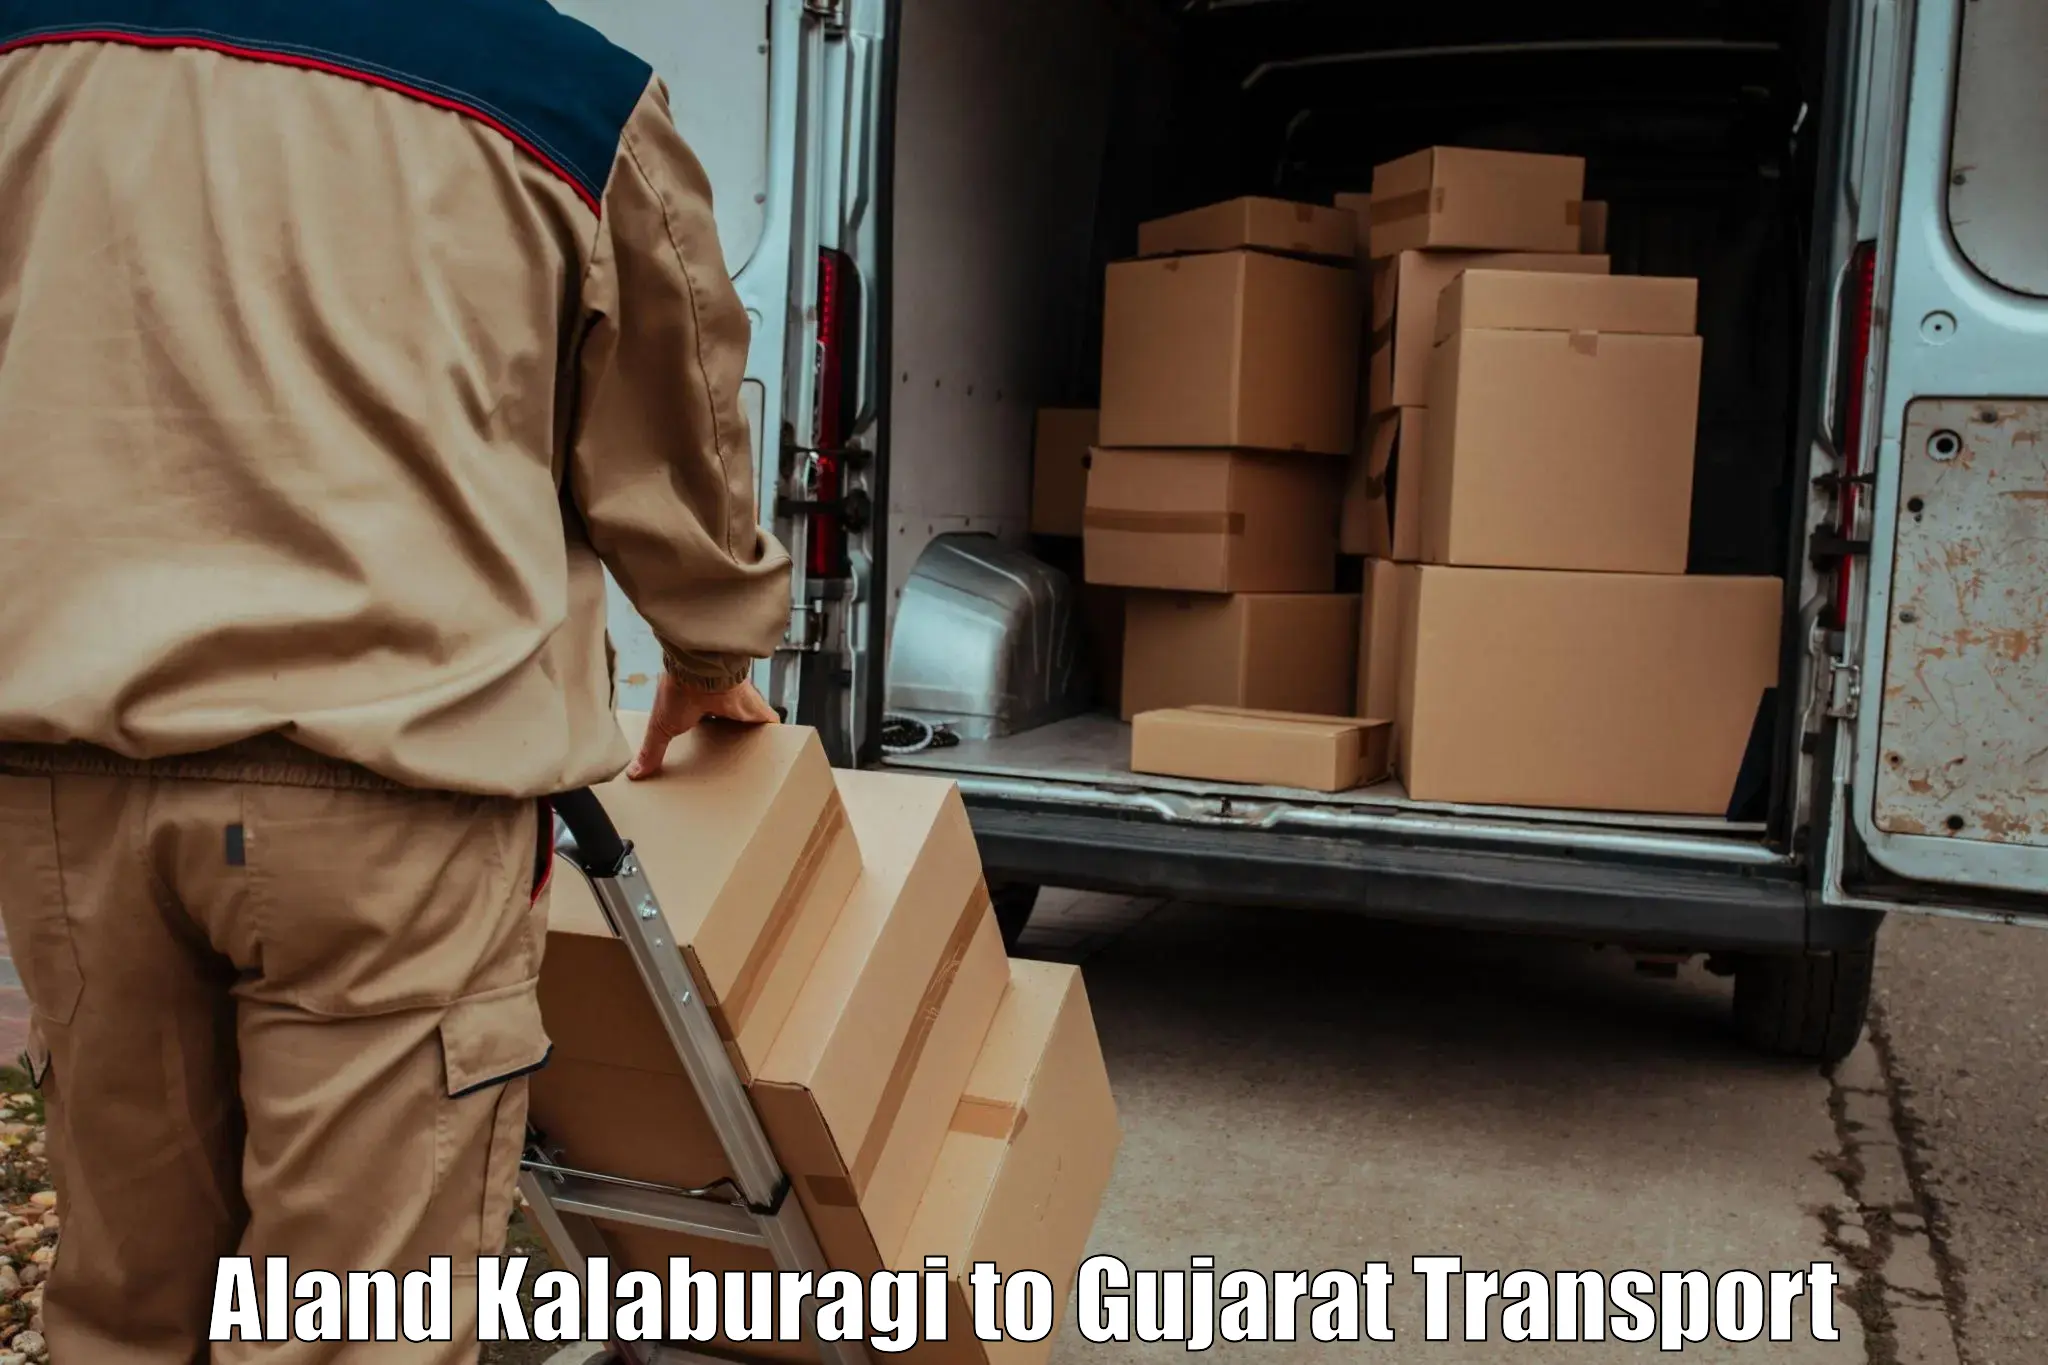 Goods delivery service Aland Kalaburagi to Anjar